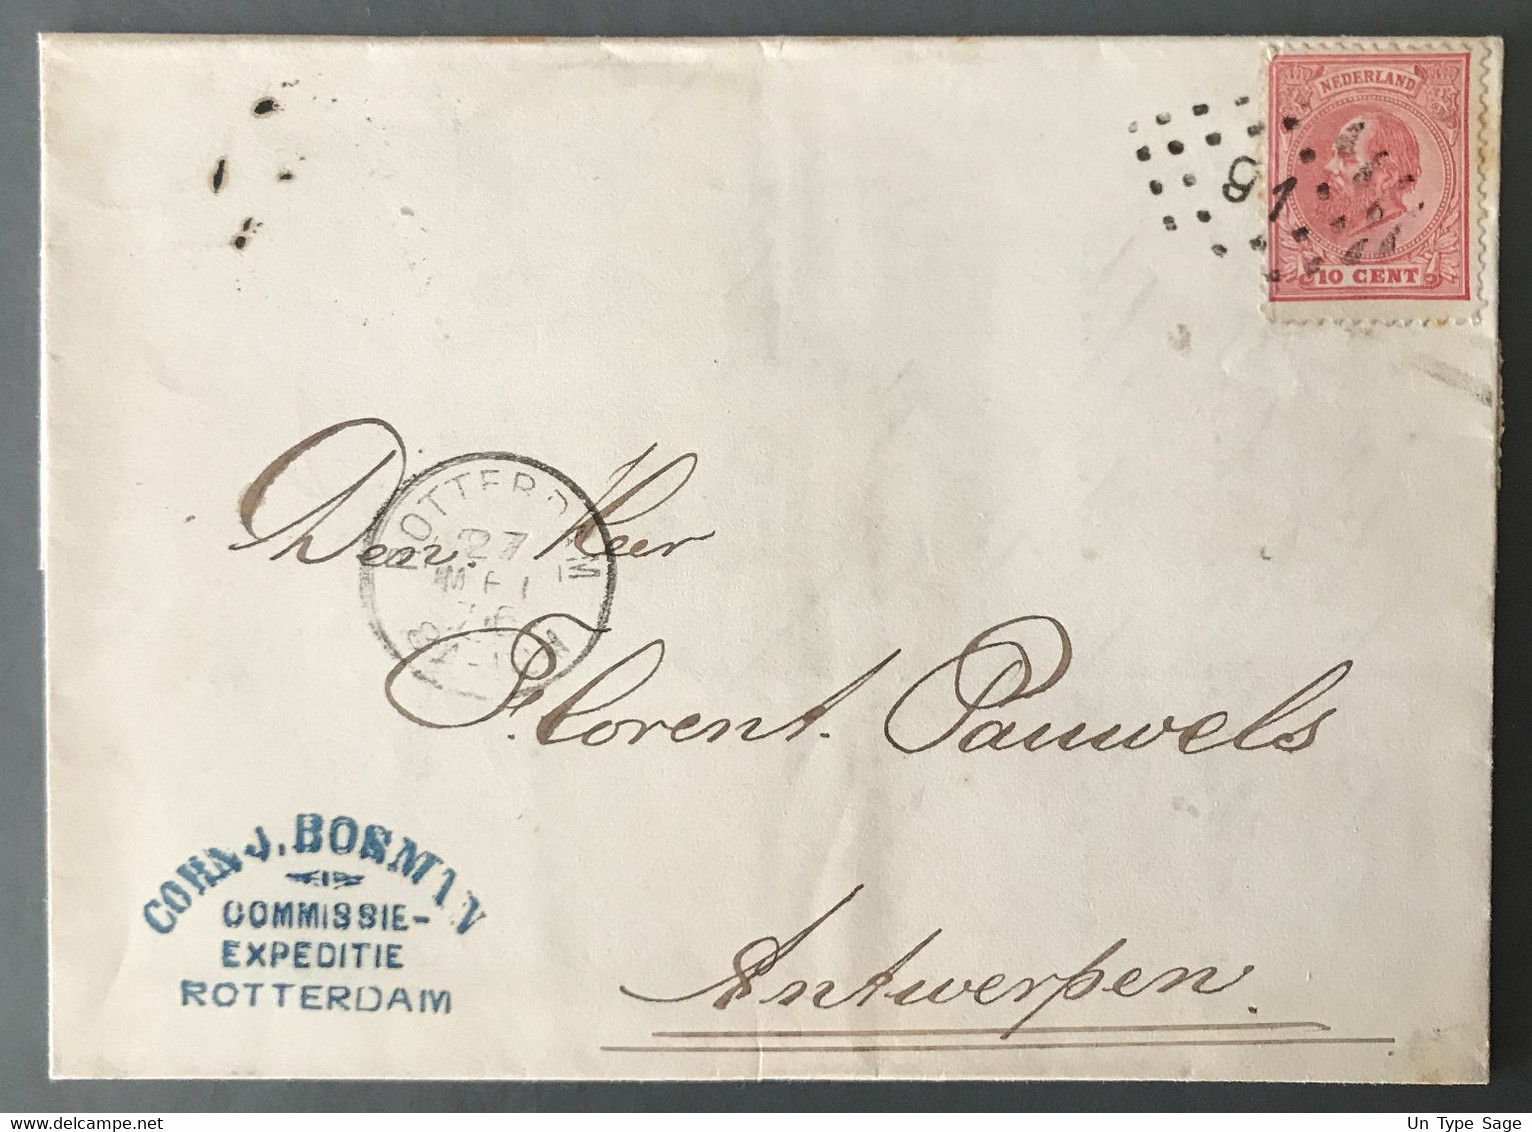 Pays-Bas, TAD ROTTERDAM 21.5.1875 Sur Enveloppe Pour Anvers, Belgique - (C1816) - Covers & Documents